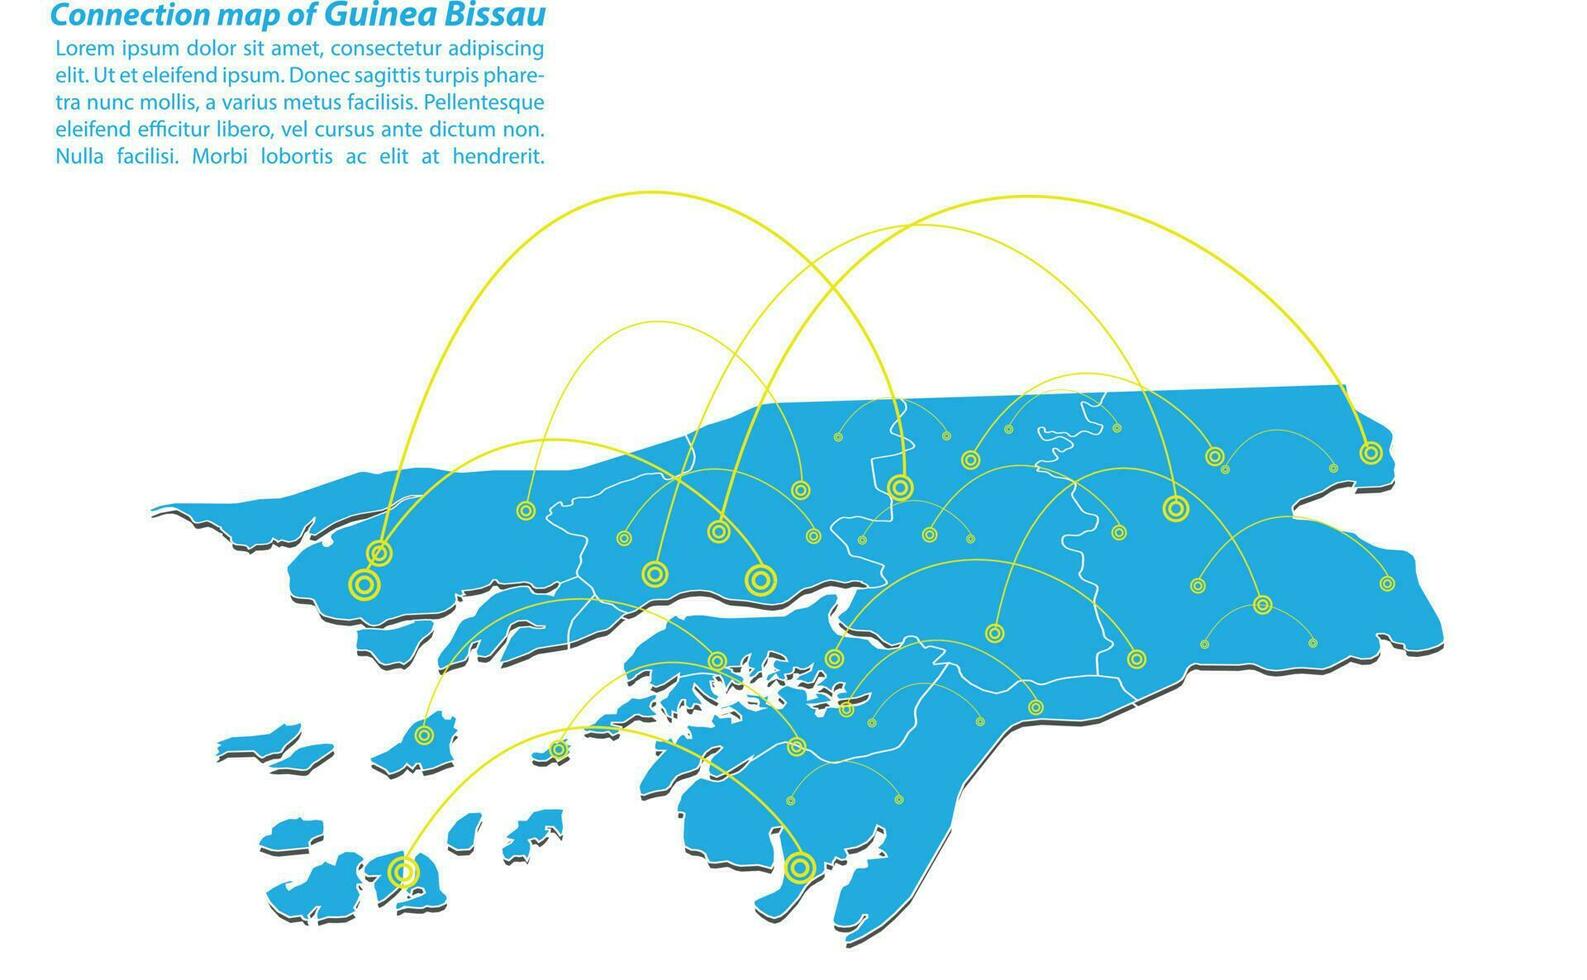 diseño moderno de red de conexiones de mapa de guinea bissau, el mejor concepto de Internet de negocio de mapas de guinea bissau a partir de series de conceptos, punto de mapa y composición de línea. mapa infográfico. ilustración vectorial vector